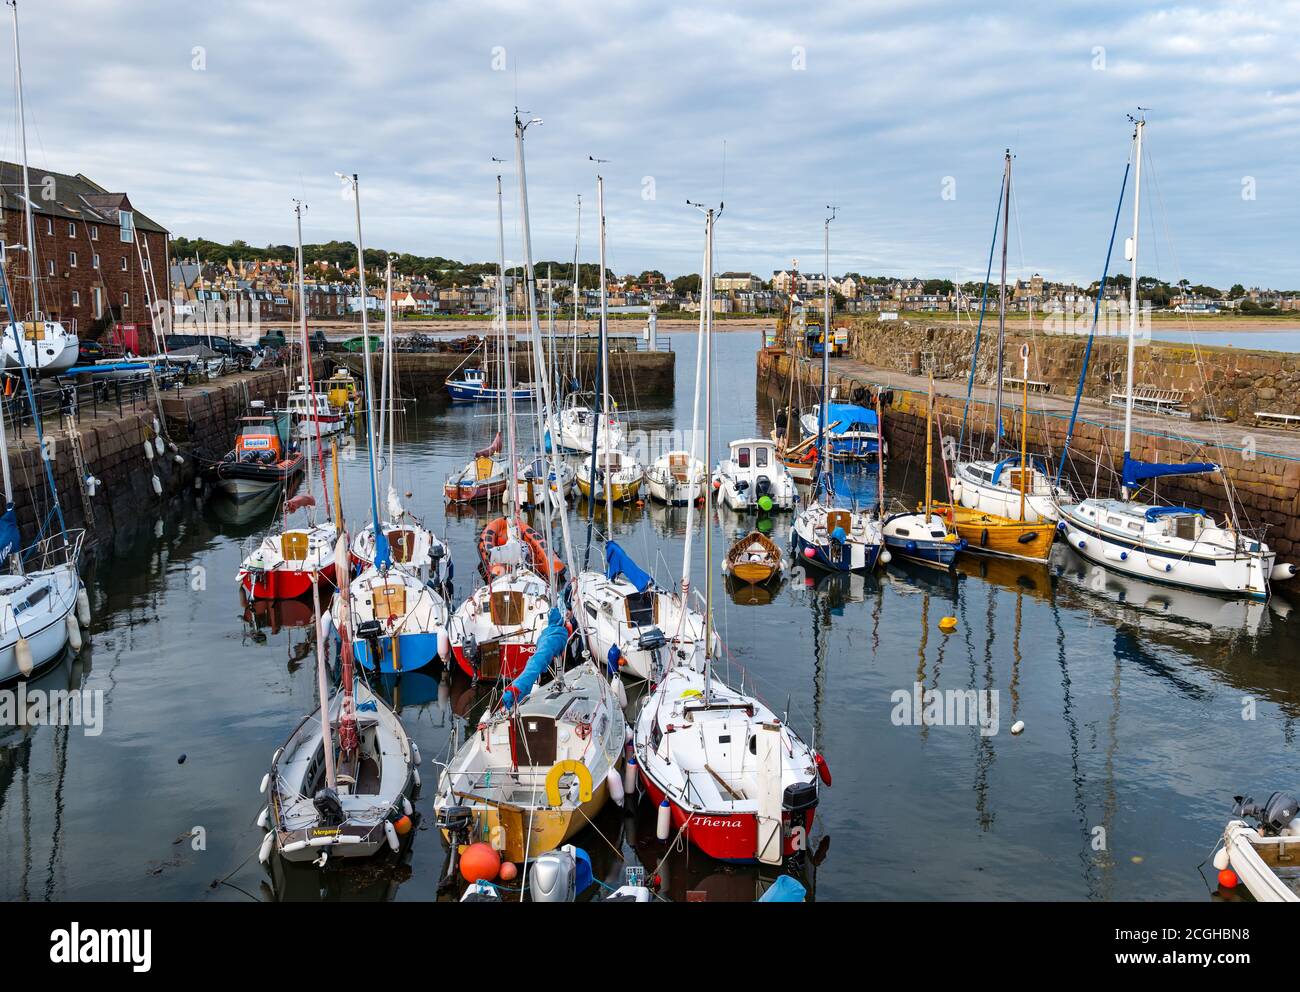 Bateaux à voile et yachts dans le port, North Berwick, East Lothian, Écosse, Royaume-Uni Banque D'Images